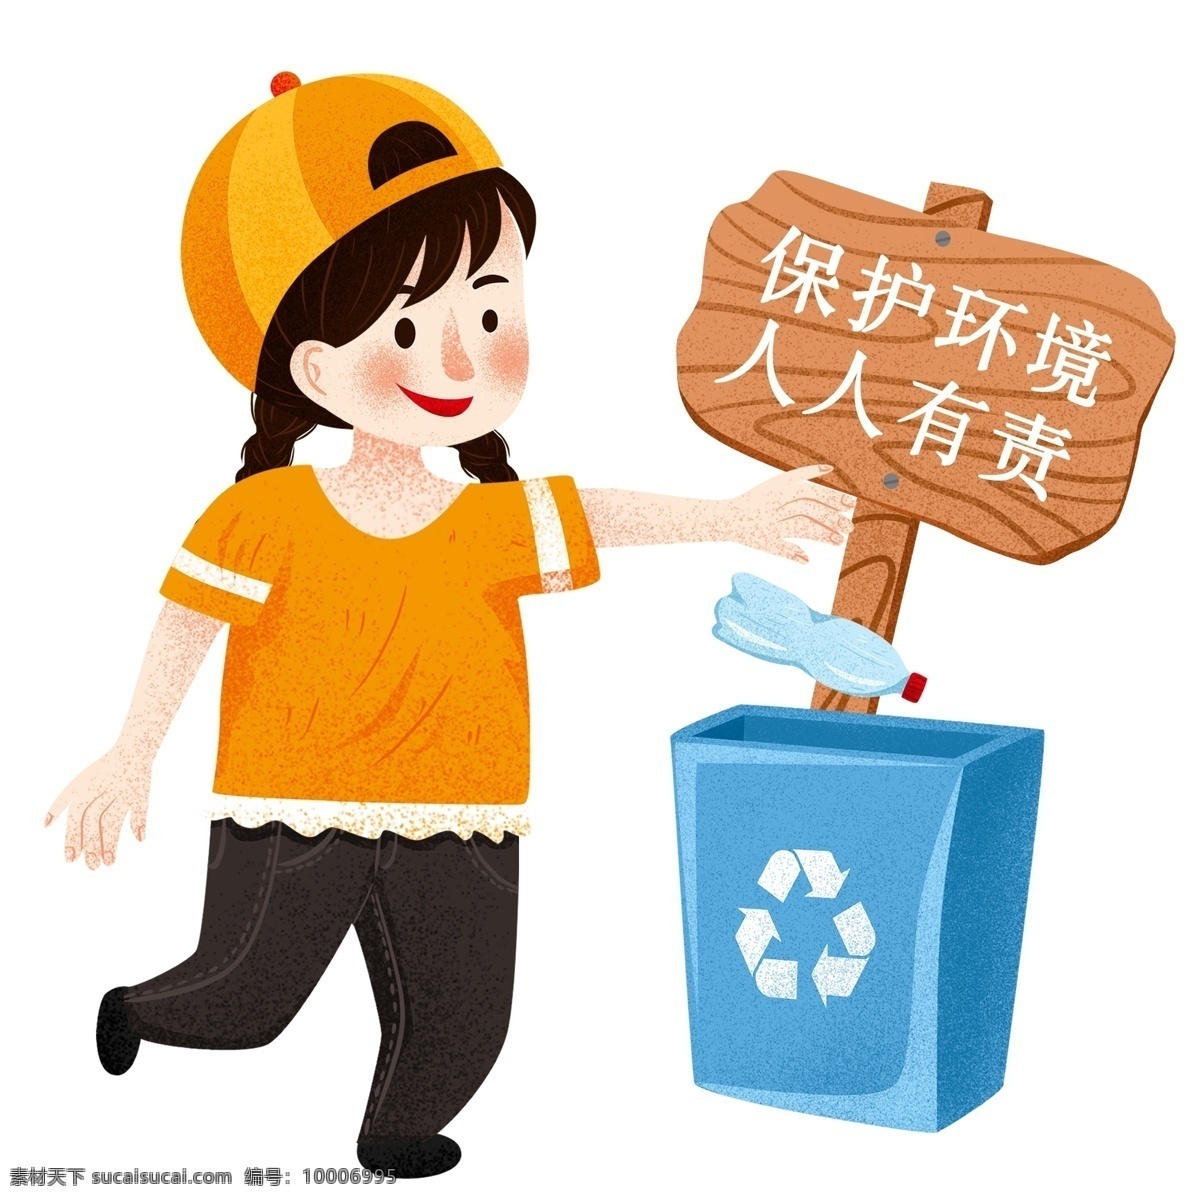 手绘 环保 爱好者 人物 卡通 插画 女孩 路牌 垃圾桶 爱护环境 保护环境 矿泉水瓶